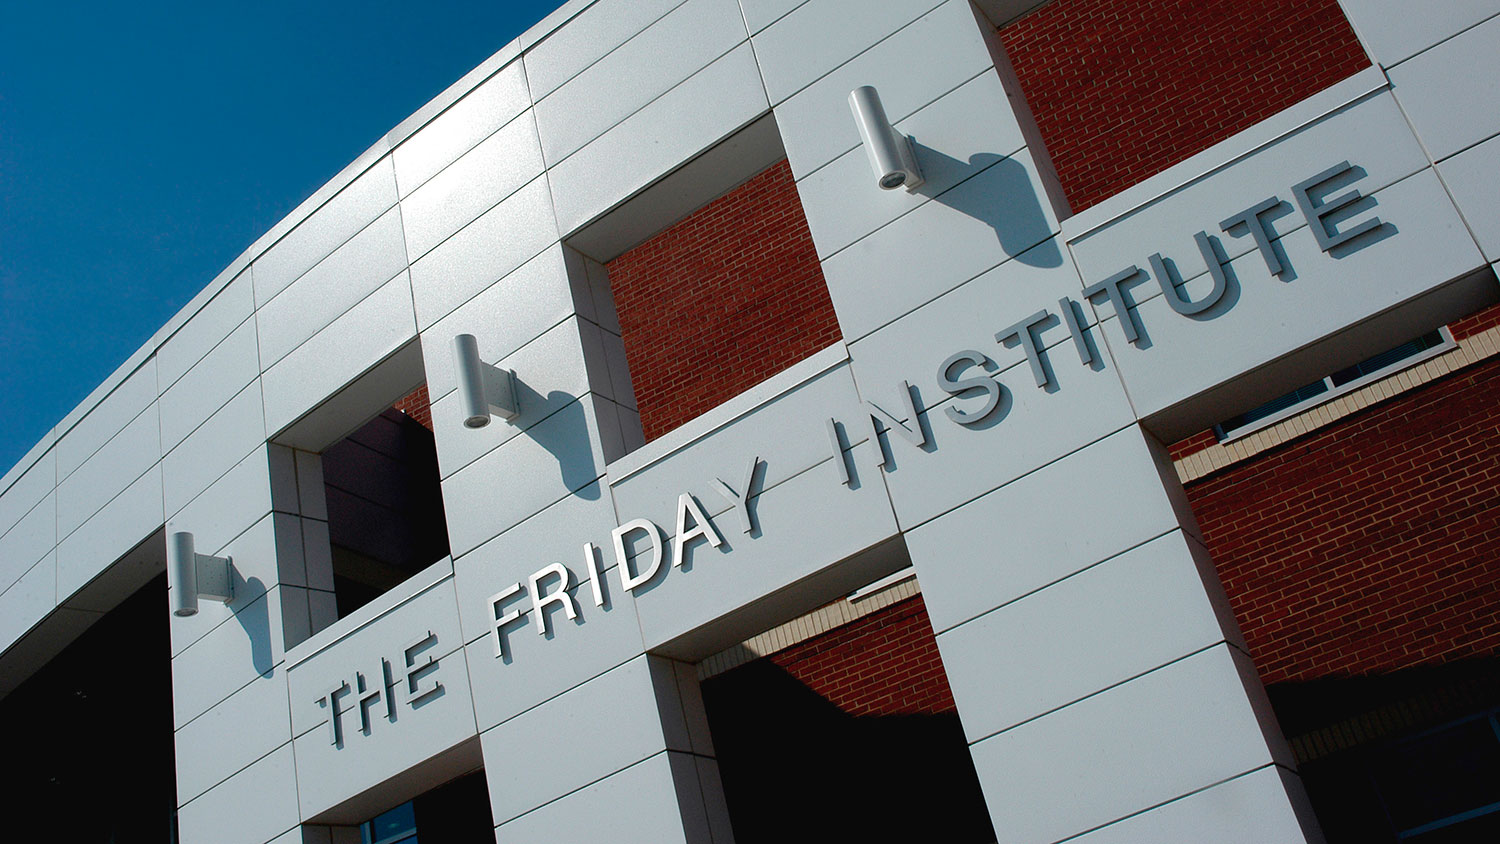 Friday Institute